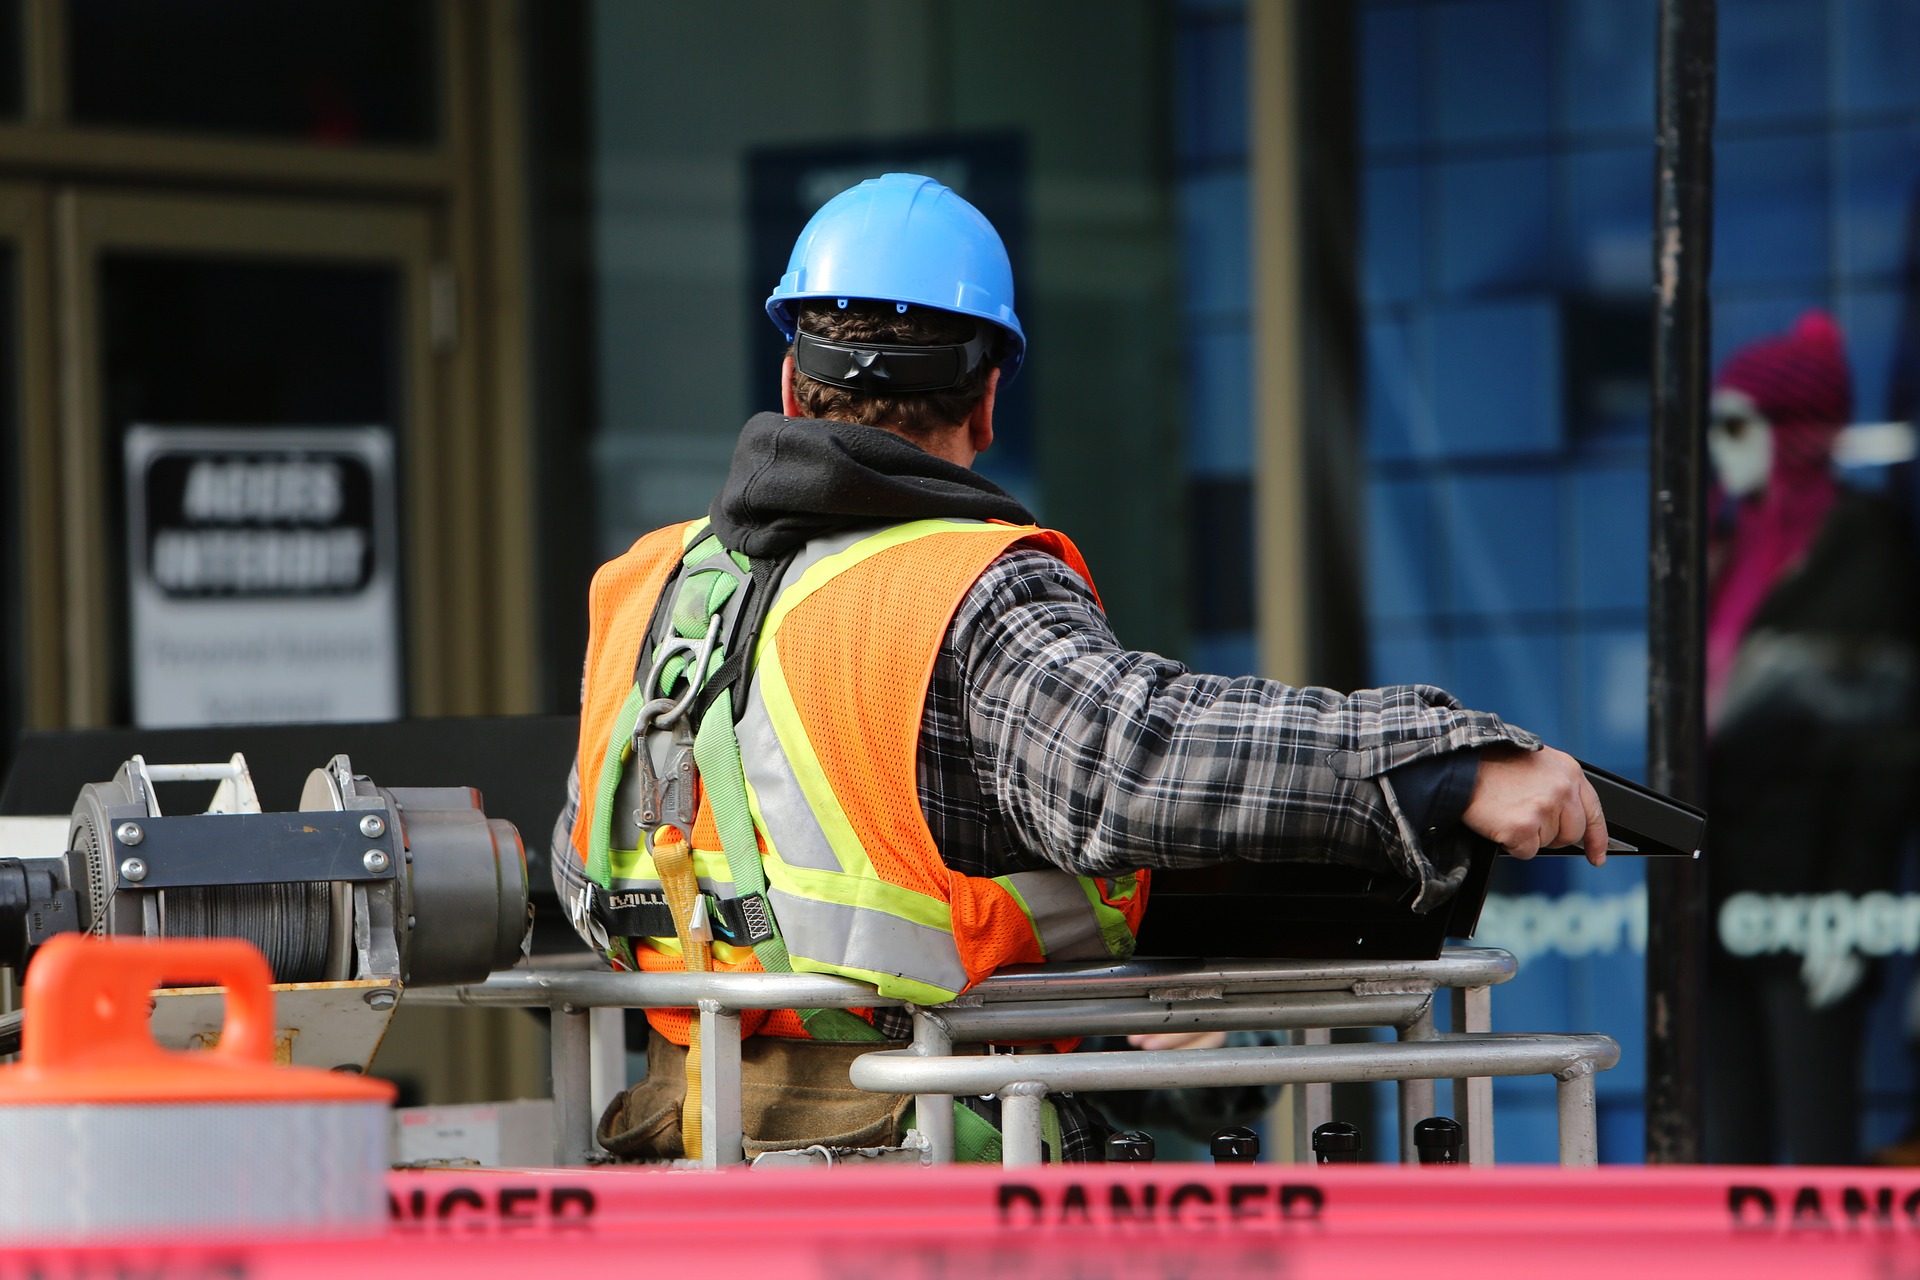 La surveillance des processus de construction est un aspect de la sécurité dans la construction qui ne doit jamais être négligé.